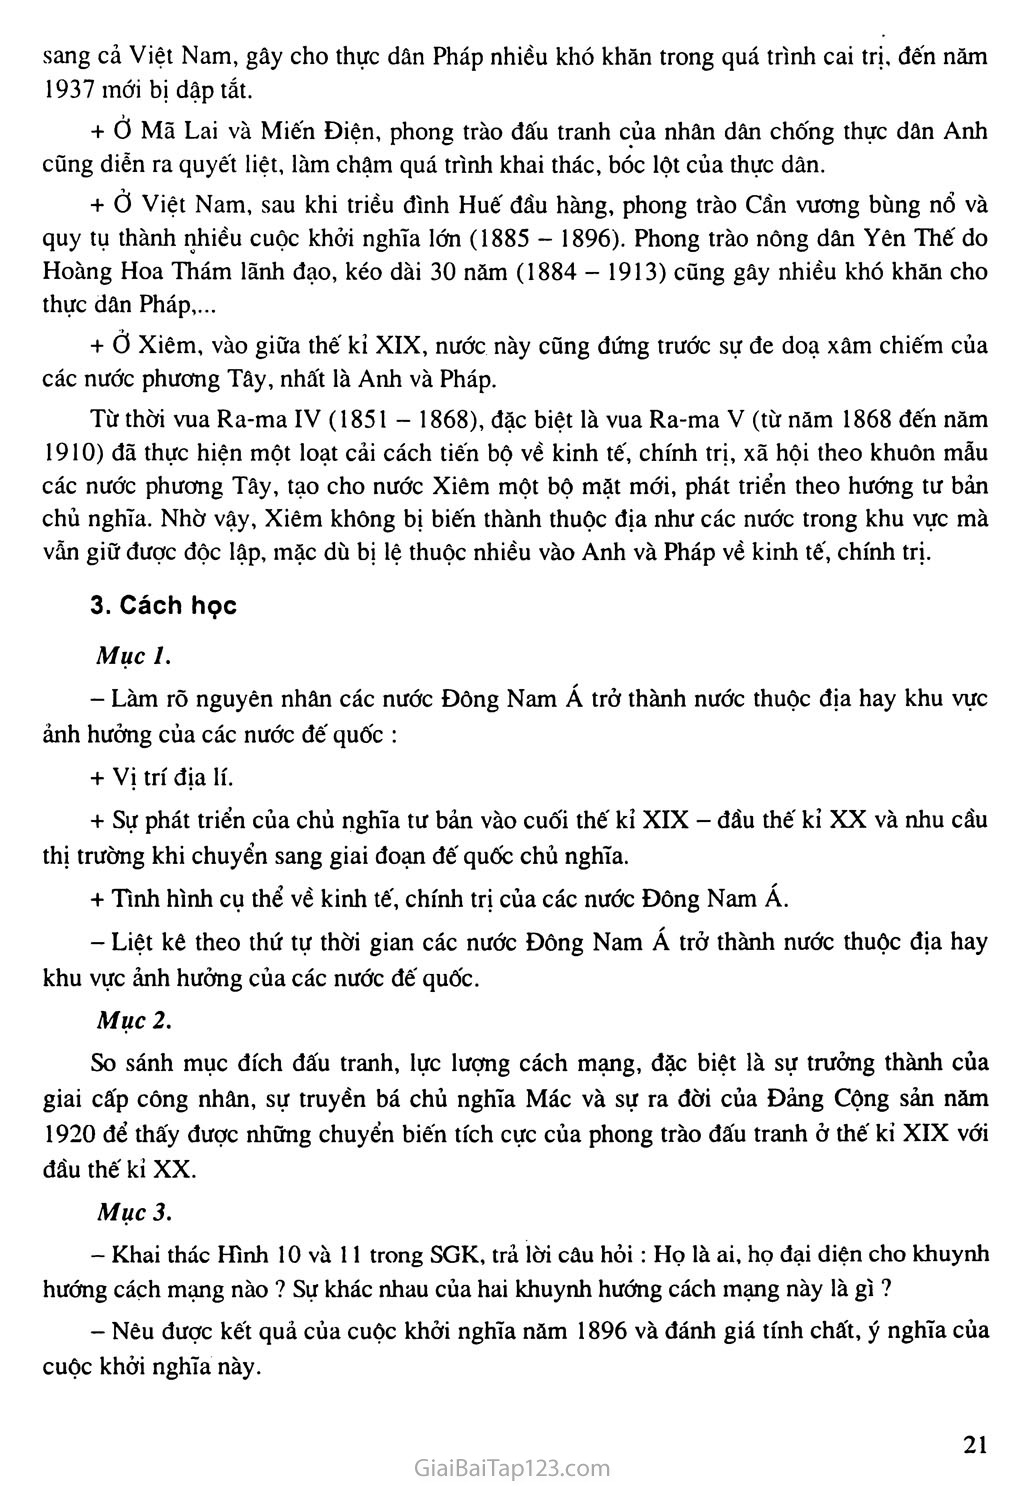 Bài 4: Các nước Đông Nam Á (Cuối thế kỷ XIX - đầu thế kỷ XX) trang 3